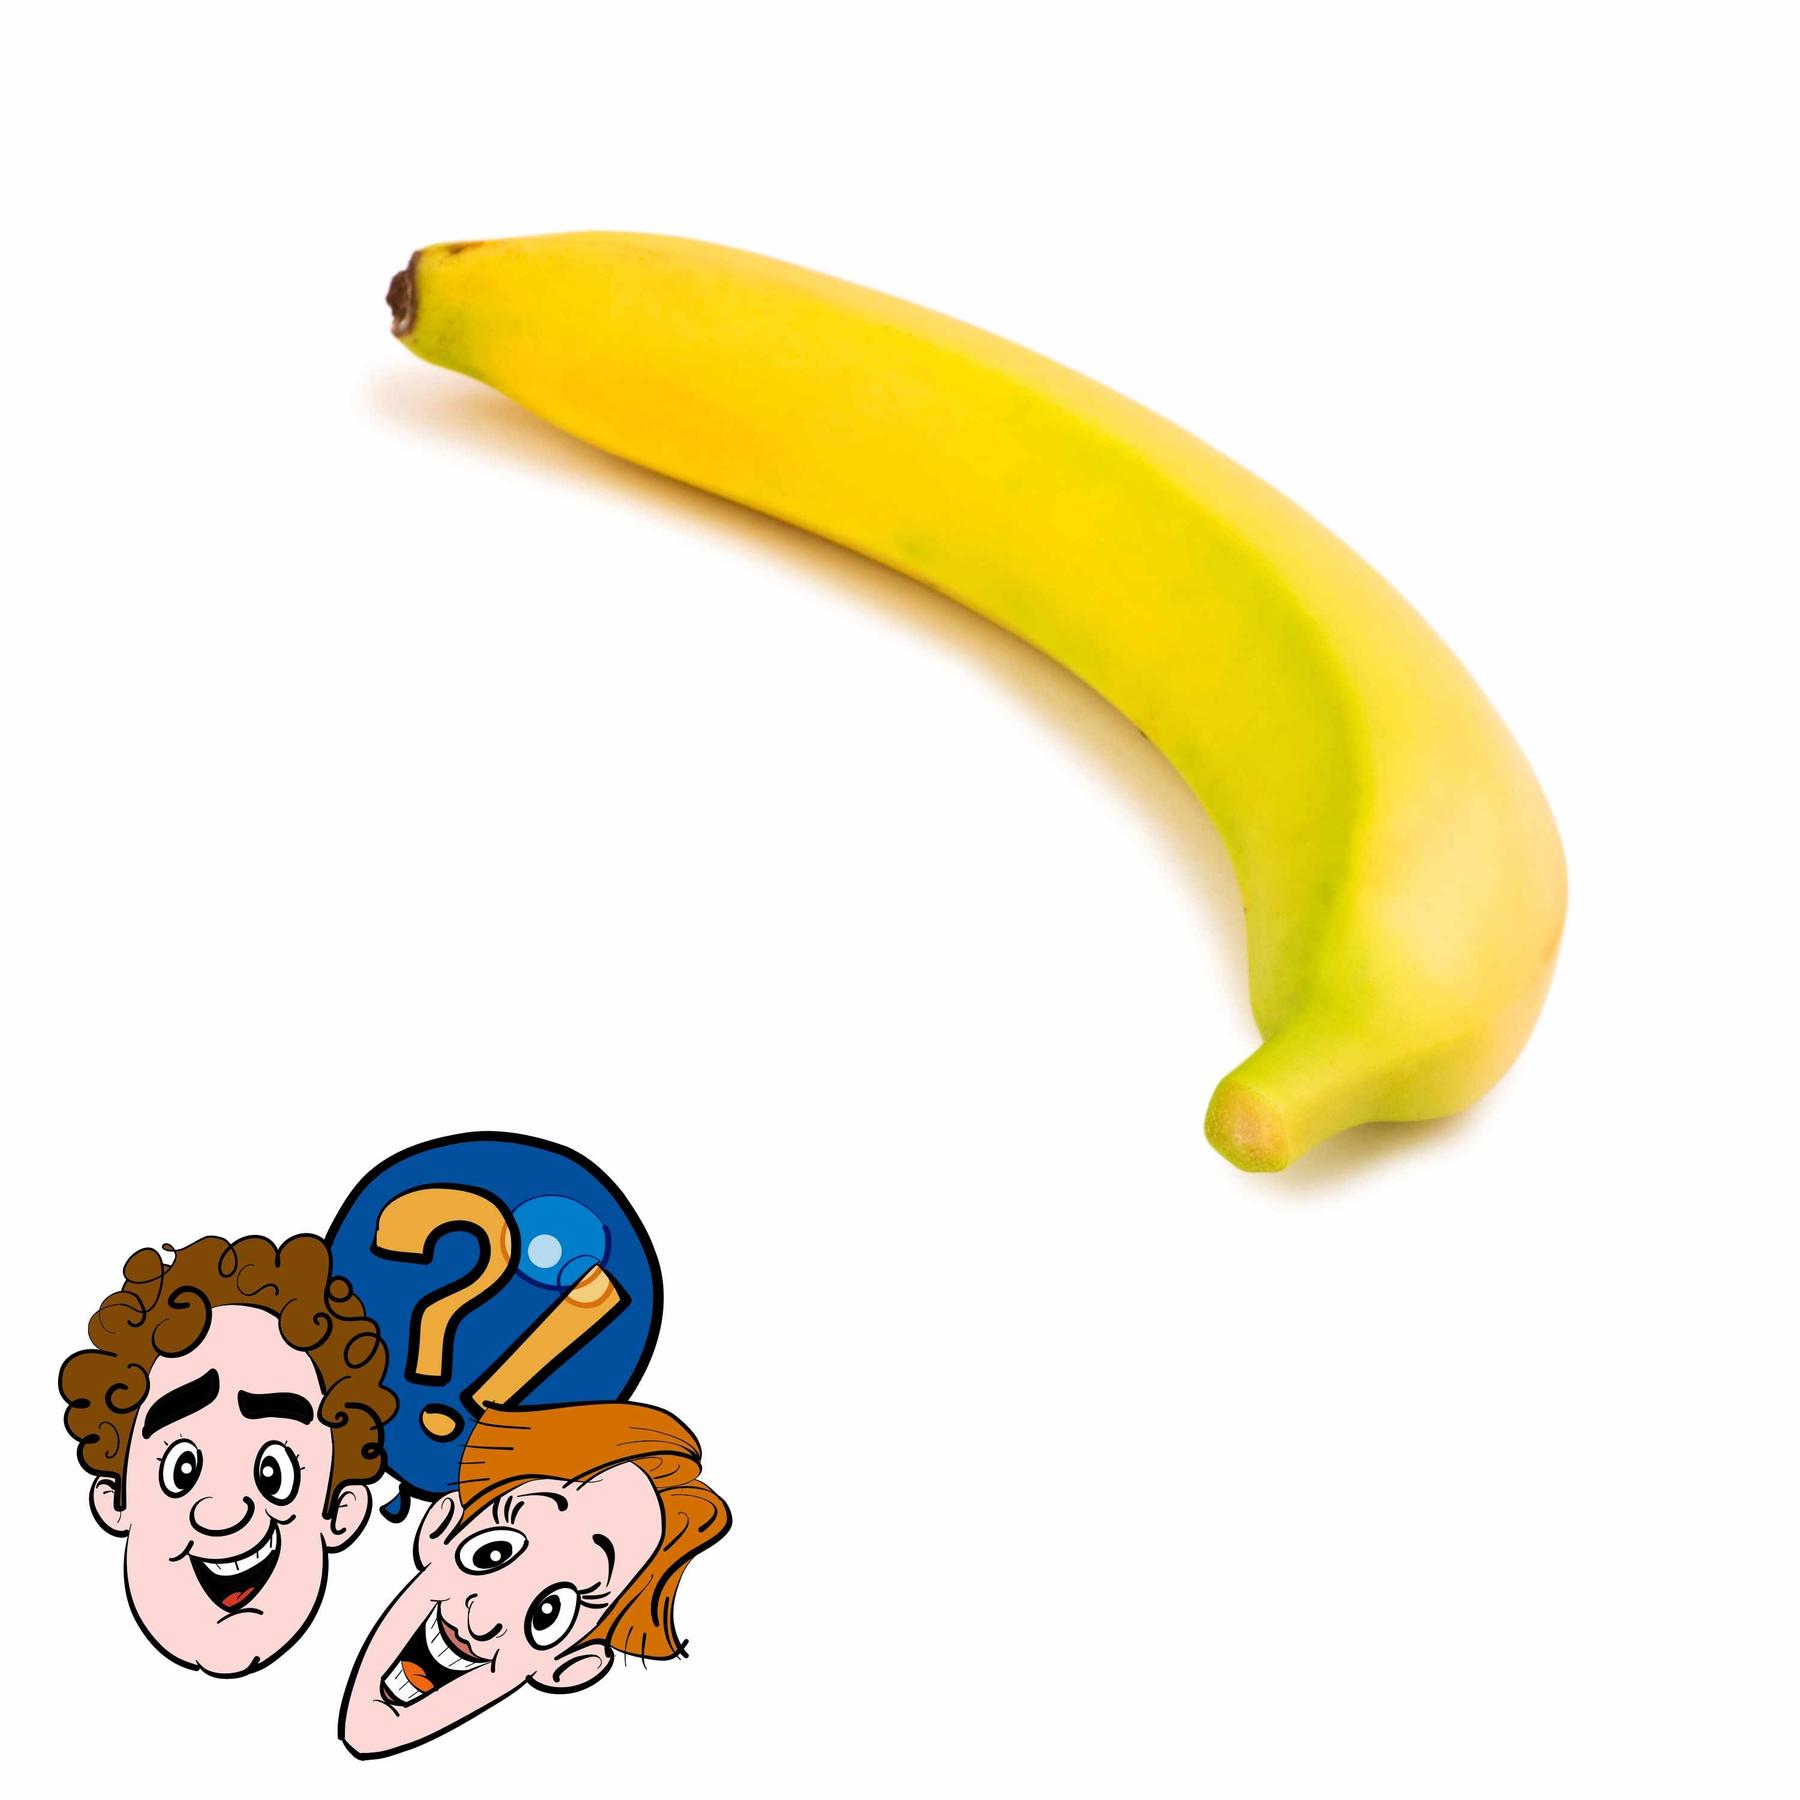 Kann man eine Banane als Bumerang nutzen?